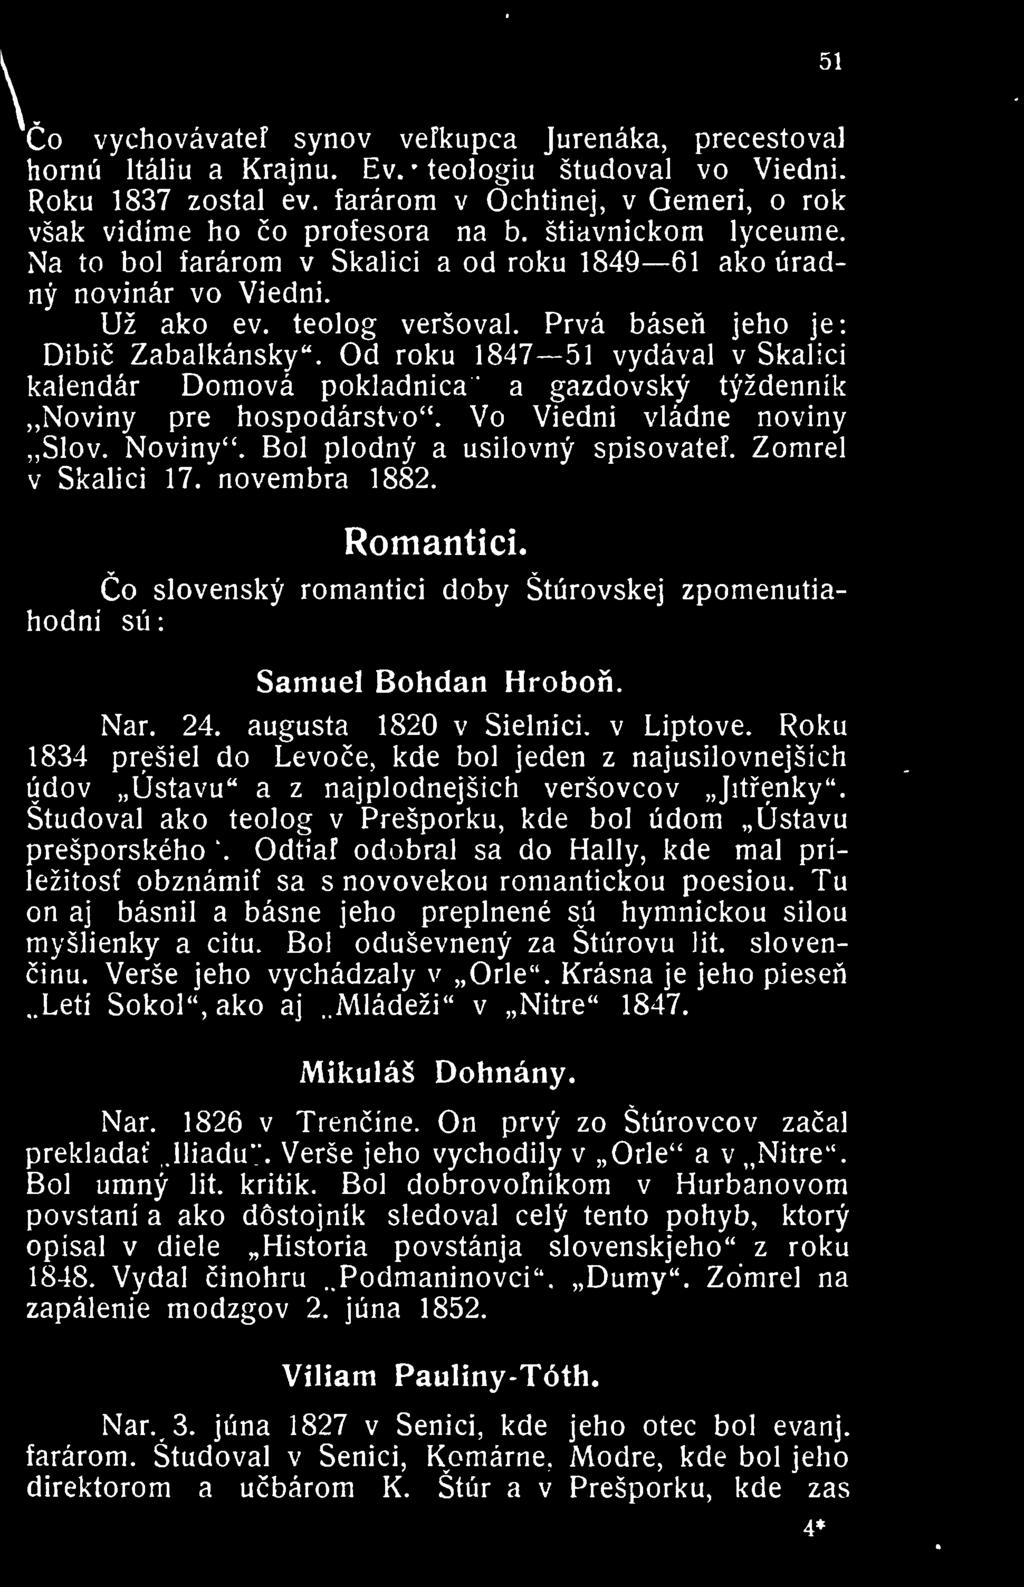 Prva basen jeho je: Dibic Zabalkansky". Od roku 1847 51 vydaval v Skalici kaiendar Domova pokladnica a gazdovsky tyzdennik Noviny pre hospodarstvo". Vo Viedni vladne noviny Slov. Noviny".